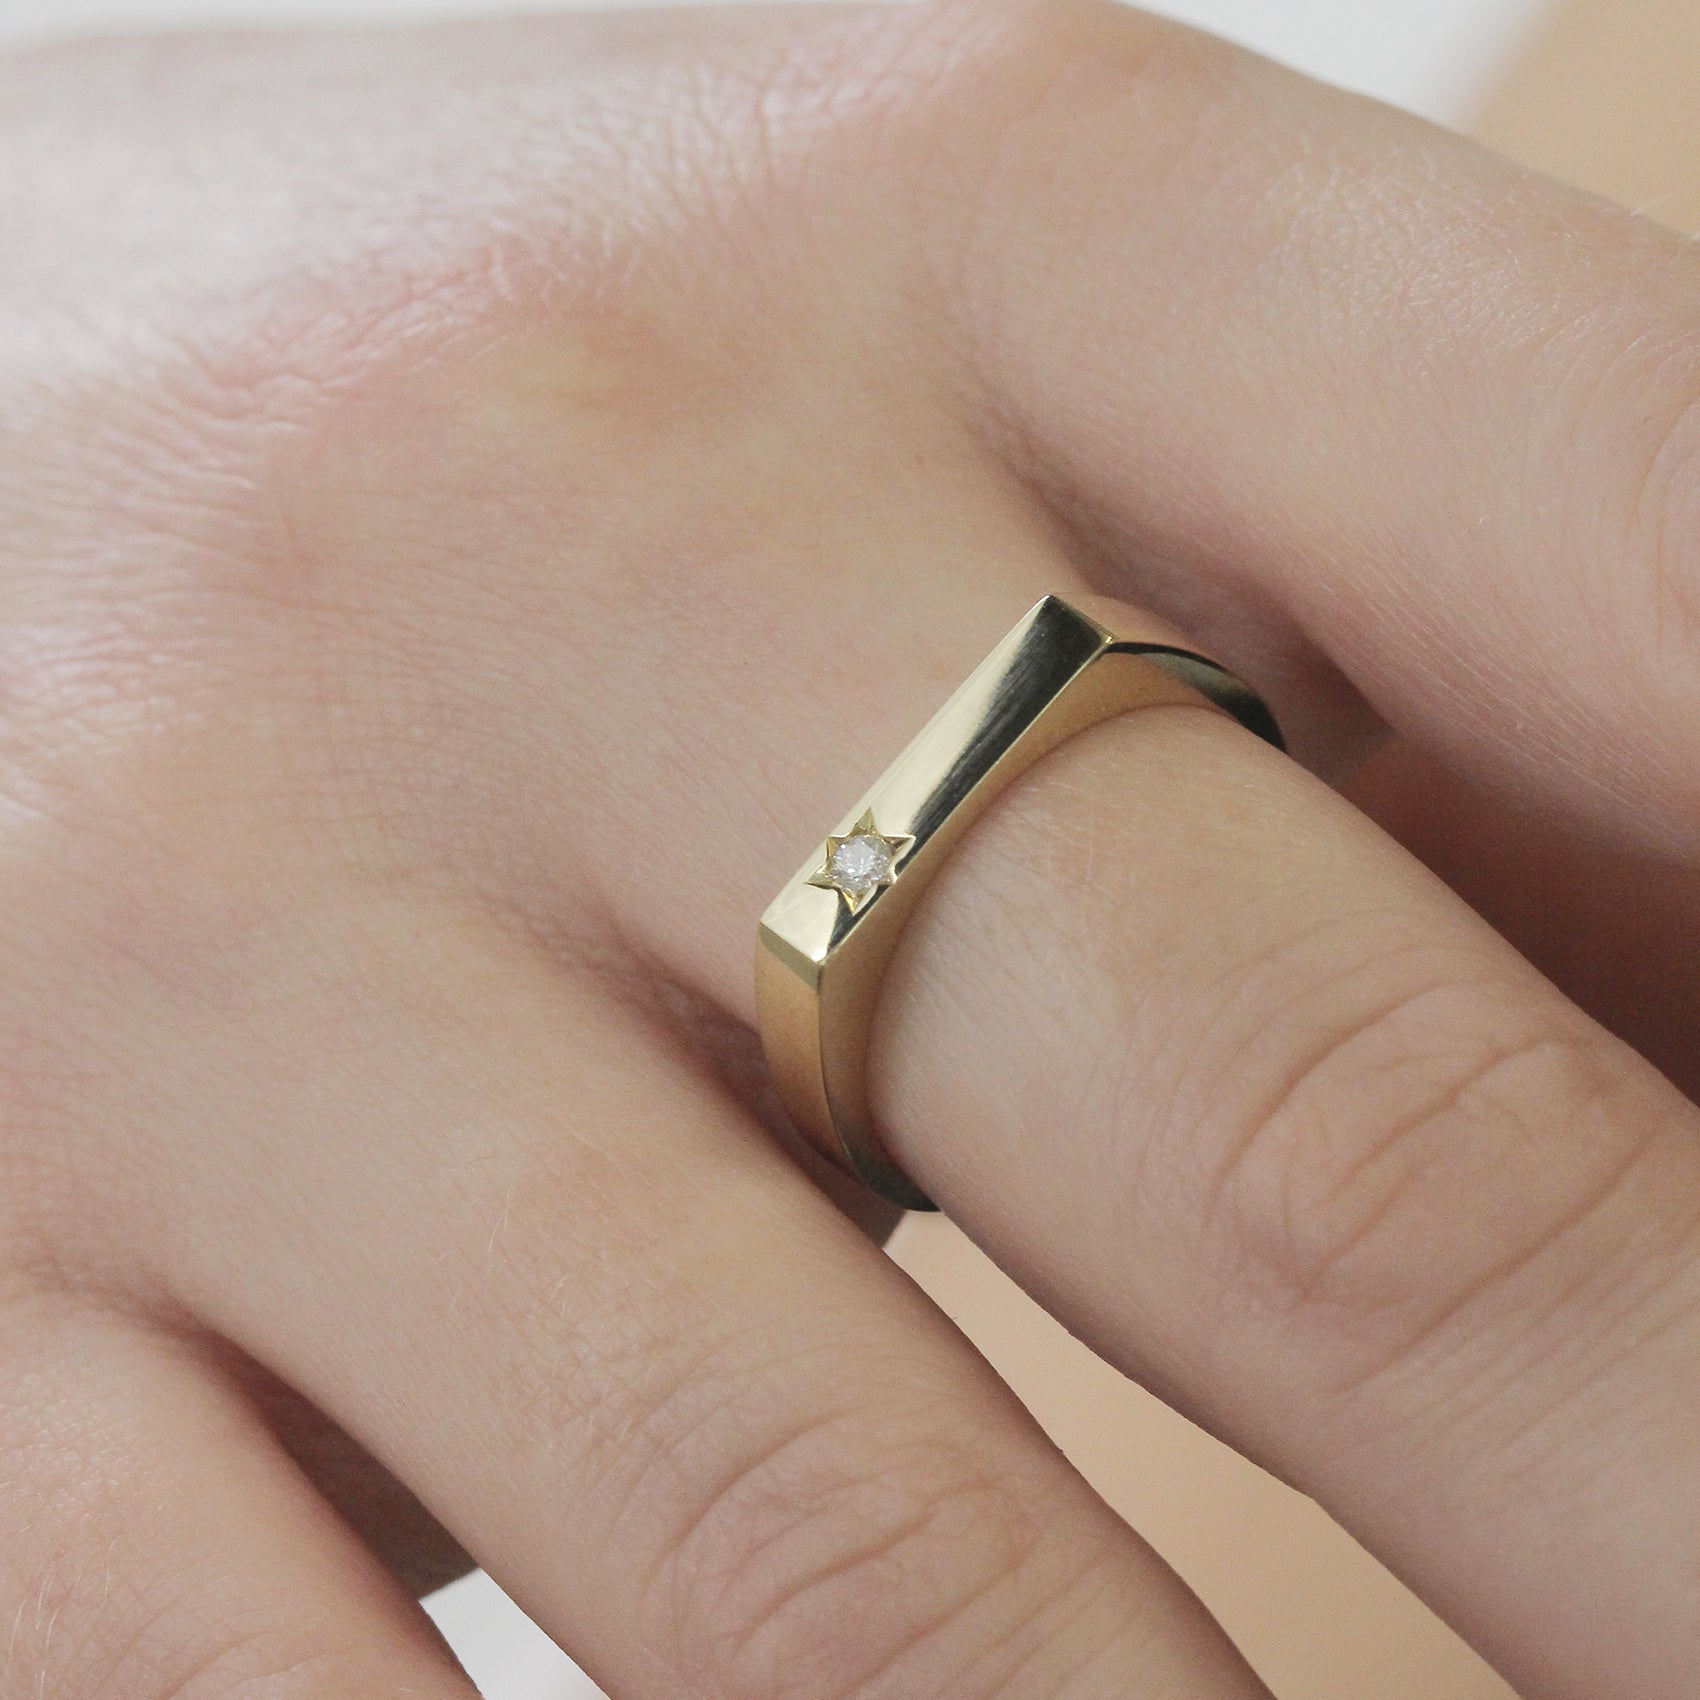 טבעת שרלוט עם יהלום לבן בשיבוץ מגן דוד